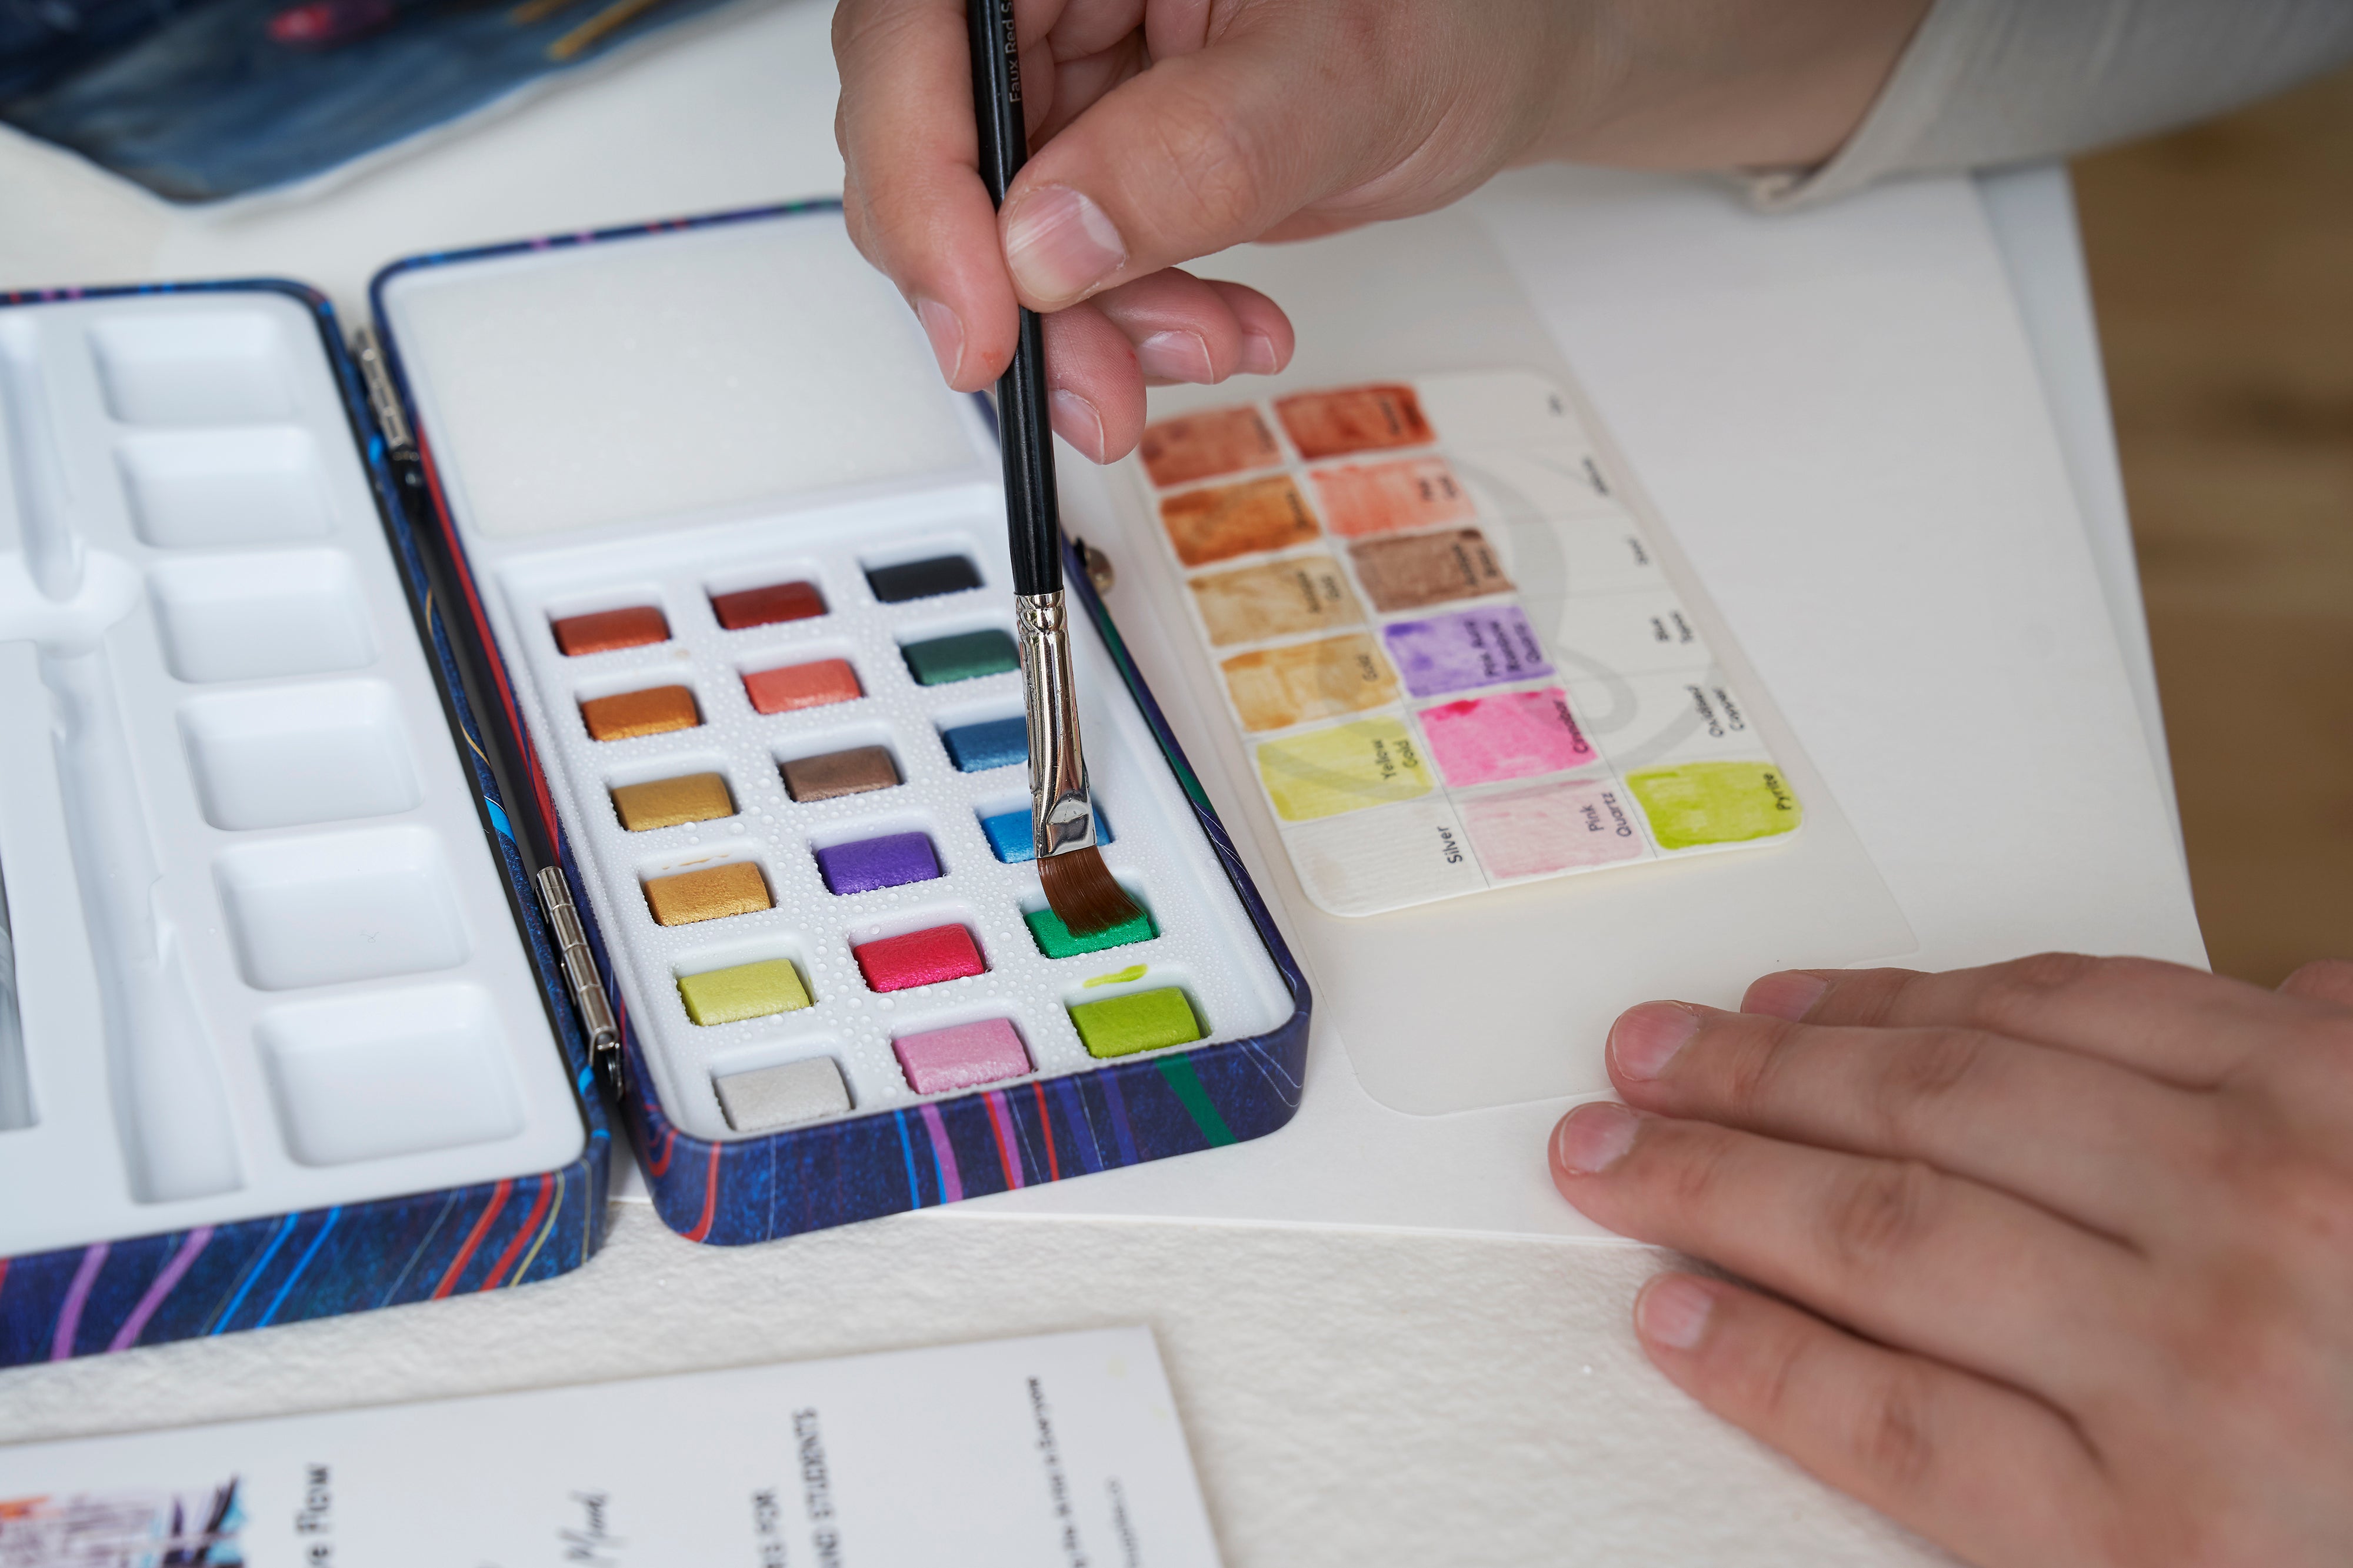 Travel Watercolor Paint Set 19 Metallic Colors – ZenARTSupplies –  ZenARTSupplies